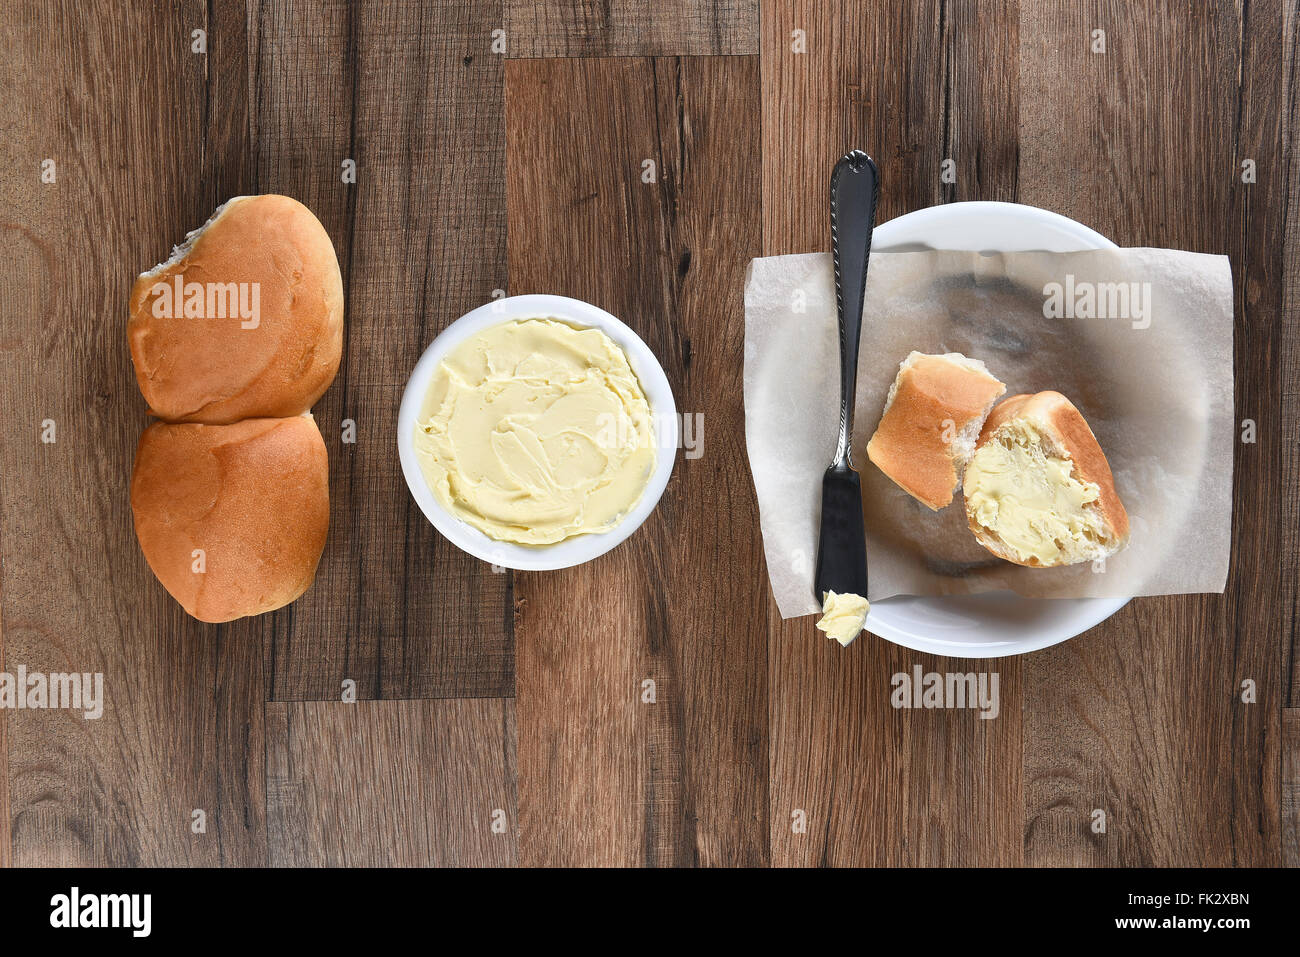 Vista aerea della cena rotoli piastra di pane e burro coccio su una tavola in legno rustico. Foto Stock